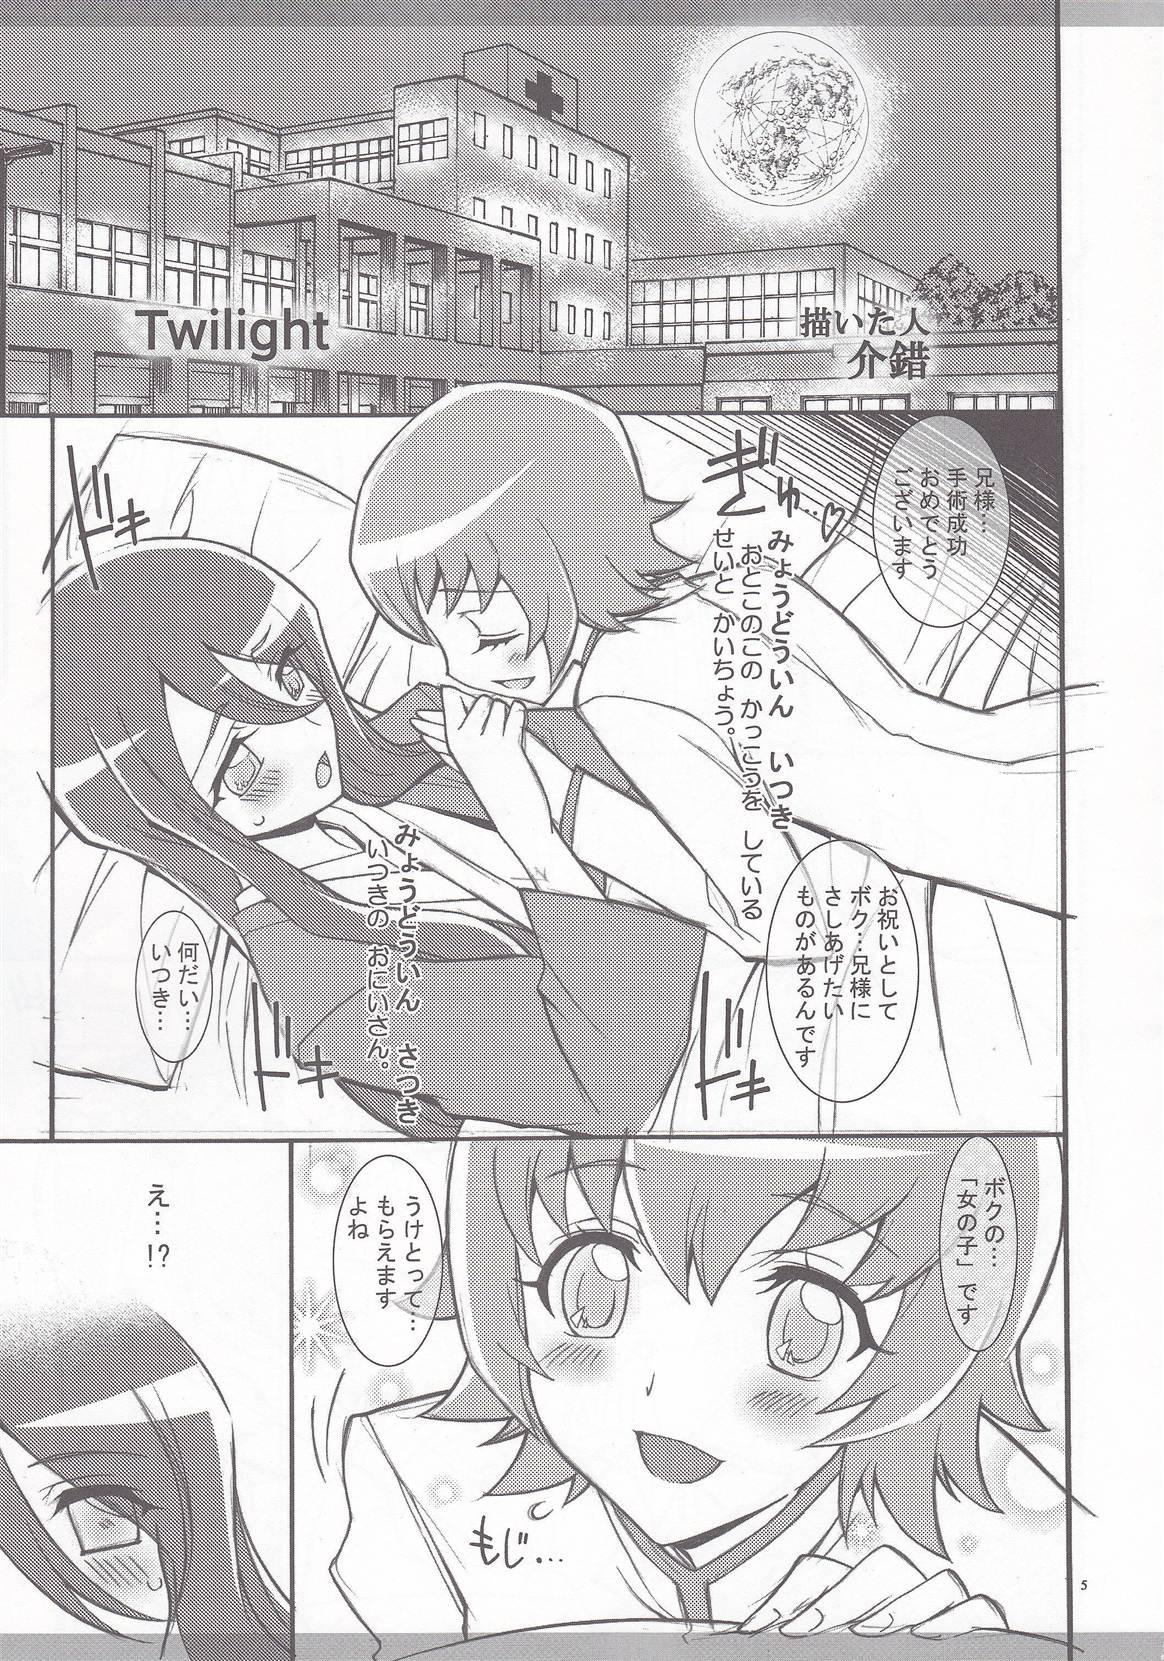 Twilight ～Newmoon～ 3